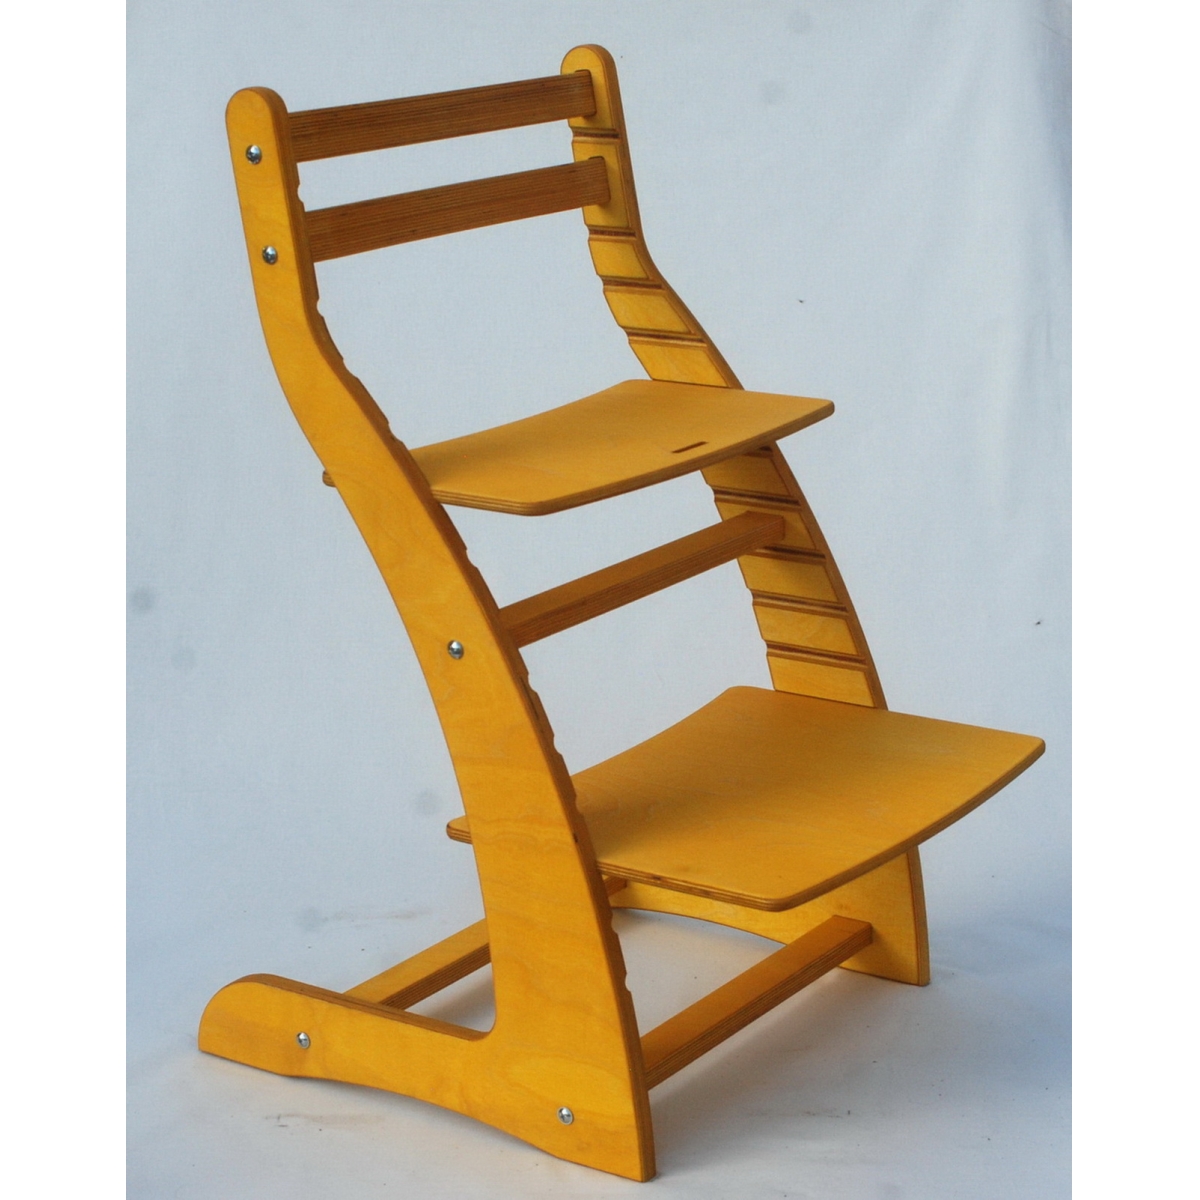 Регулируемый стул НЕКСТ из фанеры березы (цвет подсолнух)